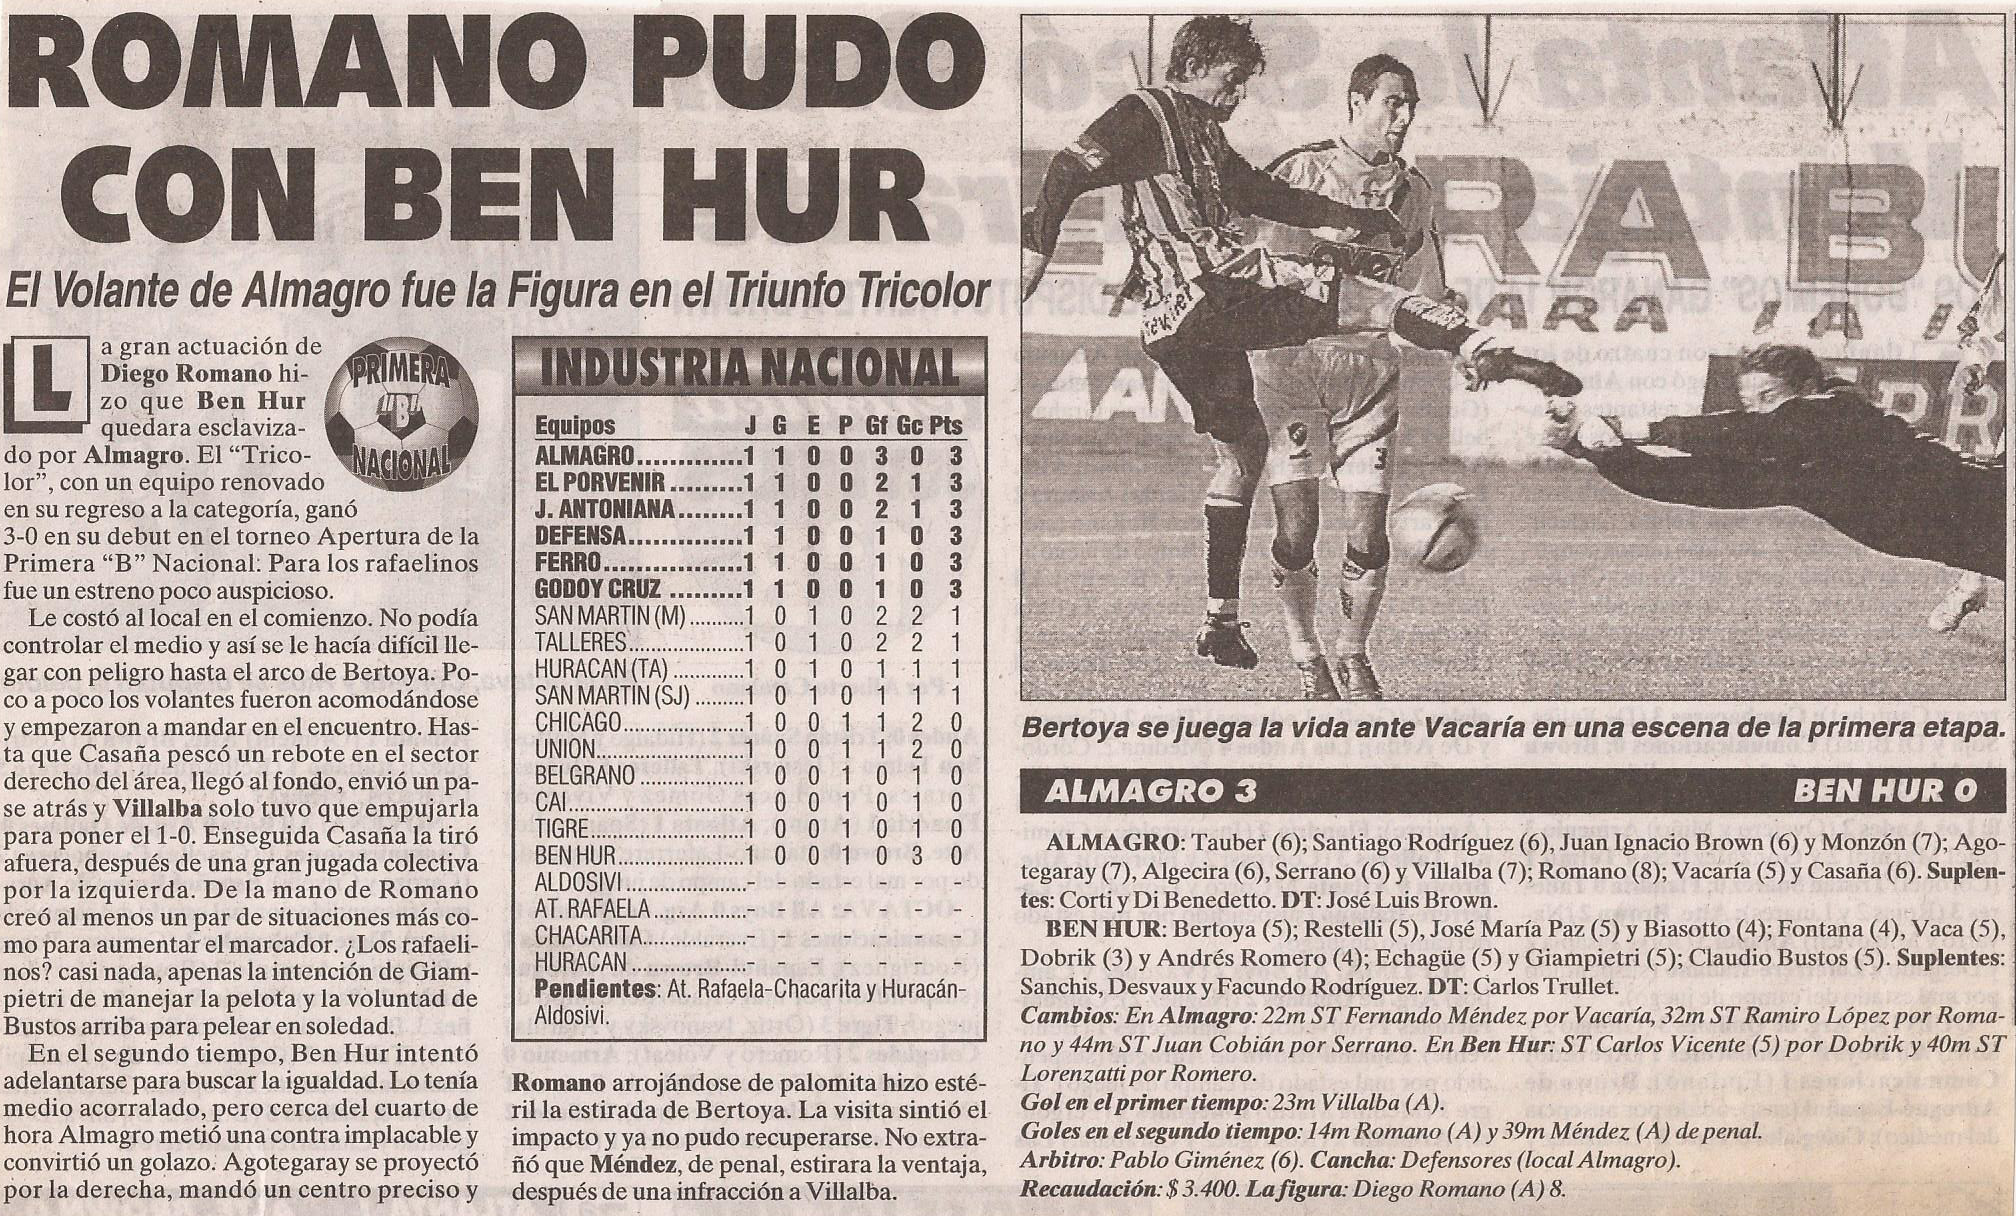 2005-06 Nacional B - Almagro vs Ben Hur - Diario Cronica